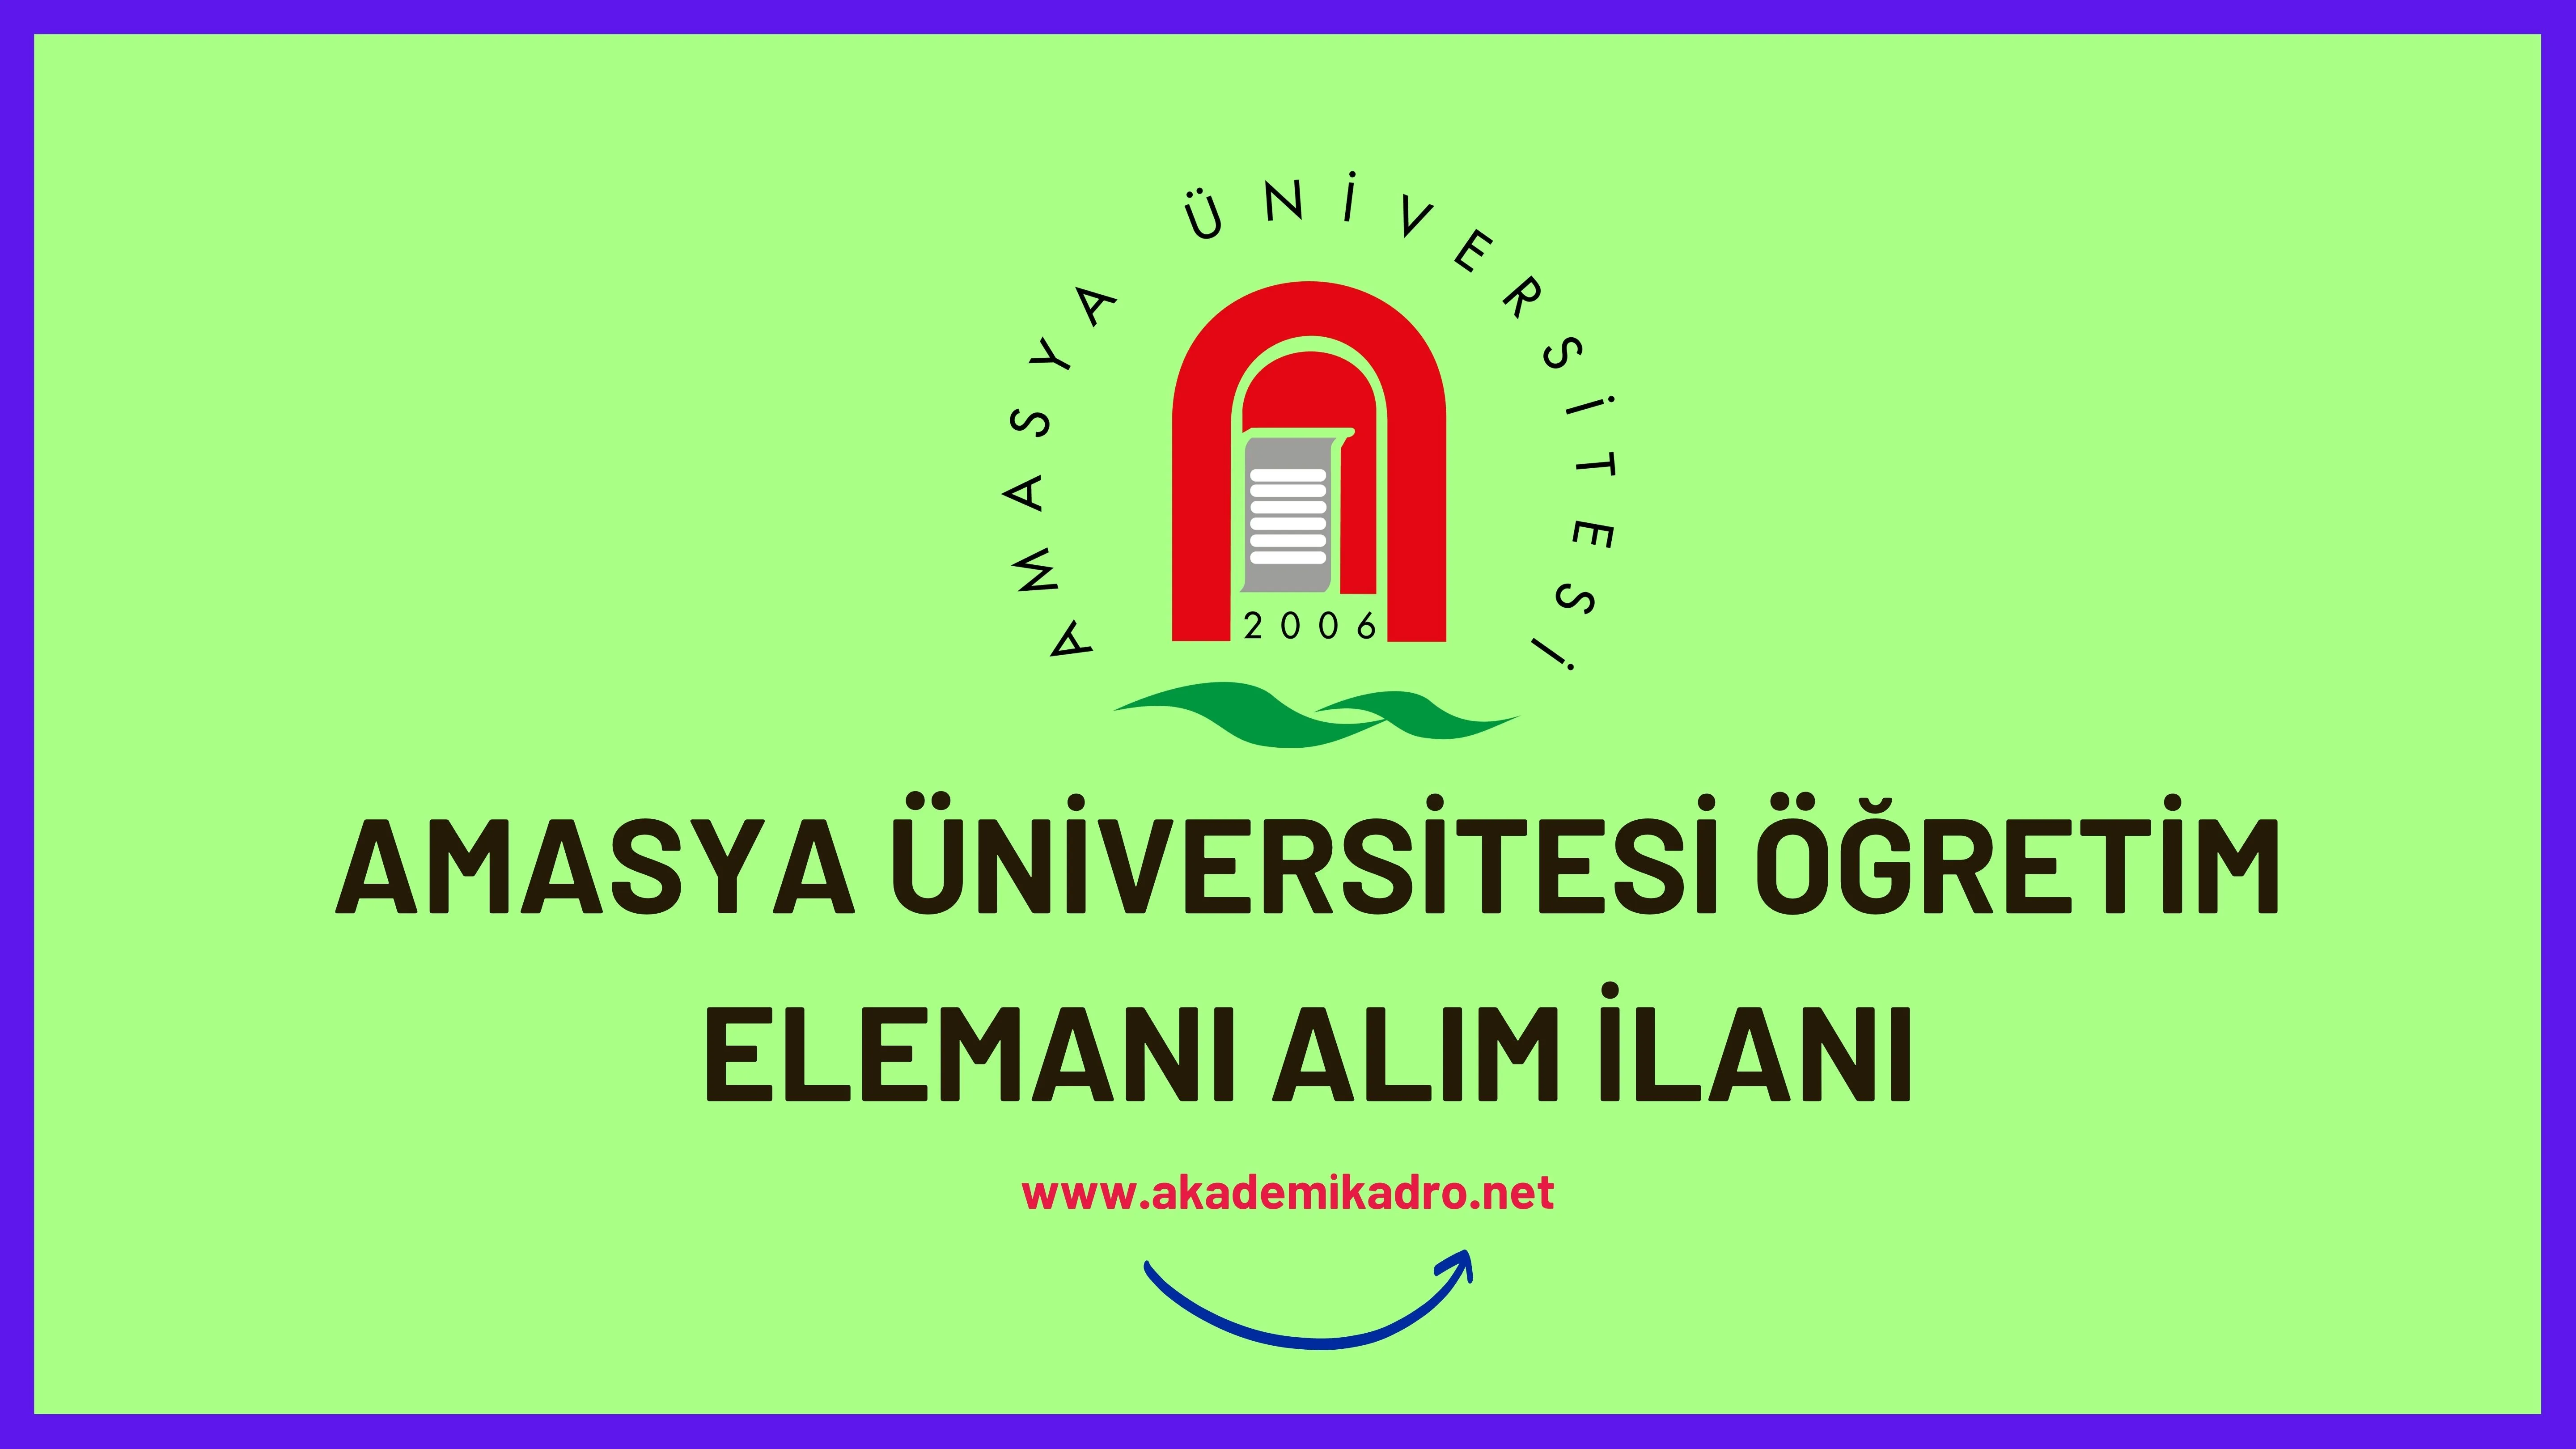 Amasya Üniversitesi 26 Öğretim üyesi ve 3 Öğretim görevlisi alacaktır. Son başvuru tarihi 19 Ekim 2022